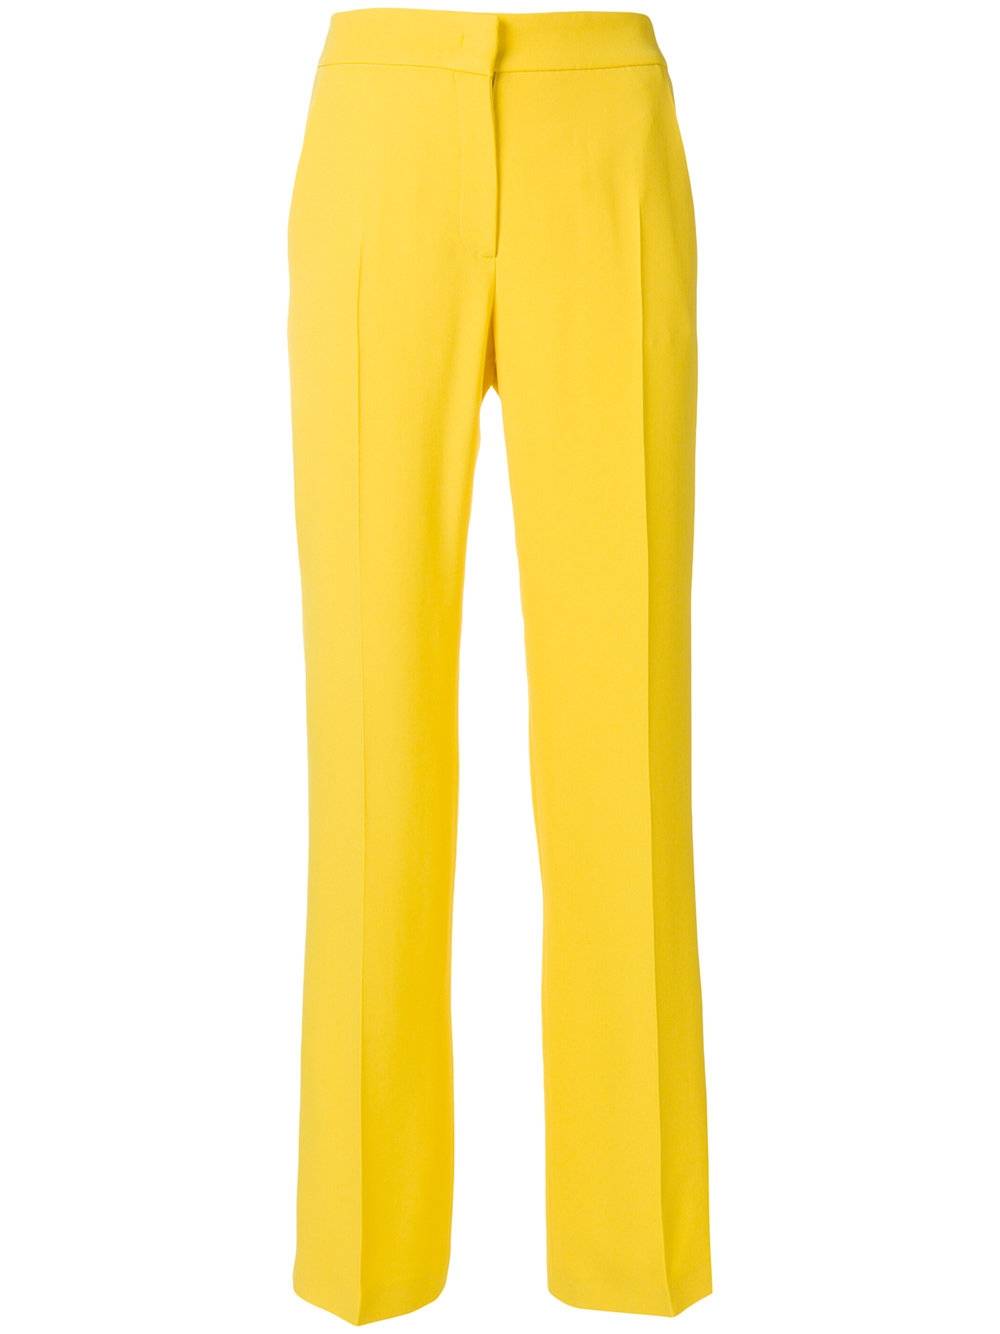 Модные тенденции: почему вам стоит носить желтый цвет этим летом